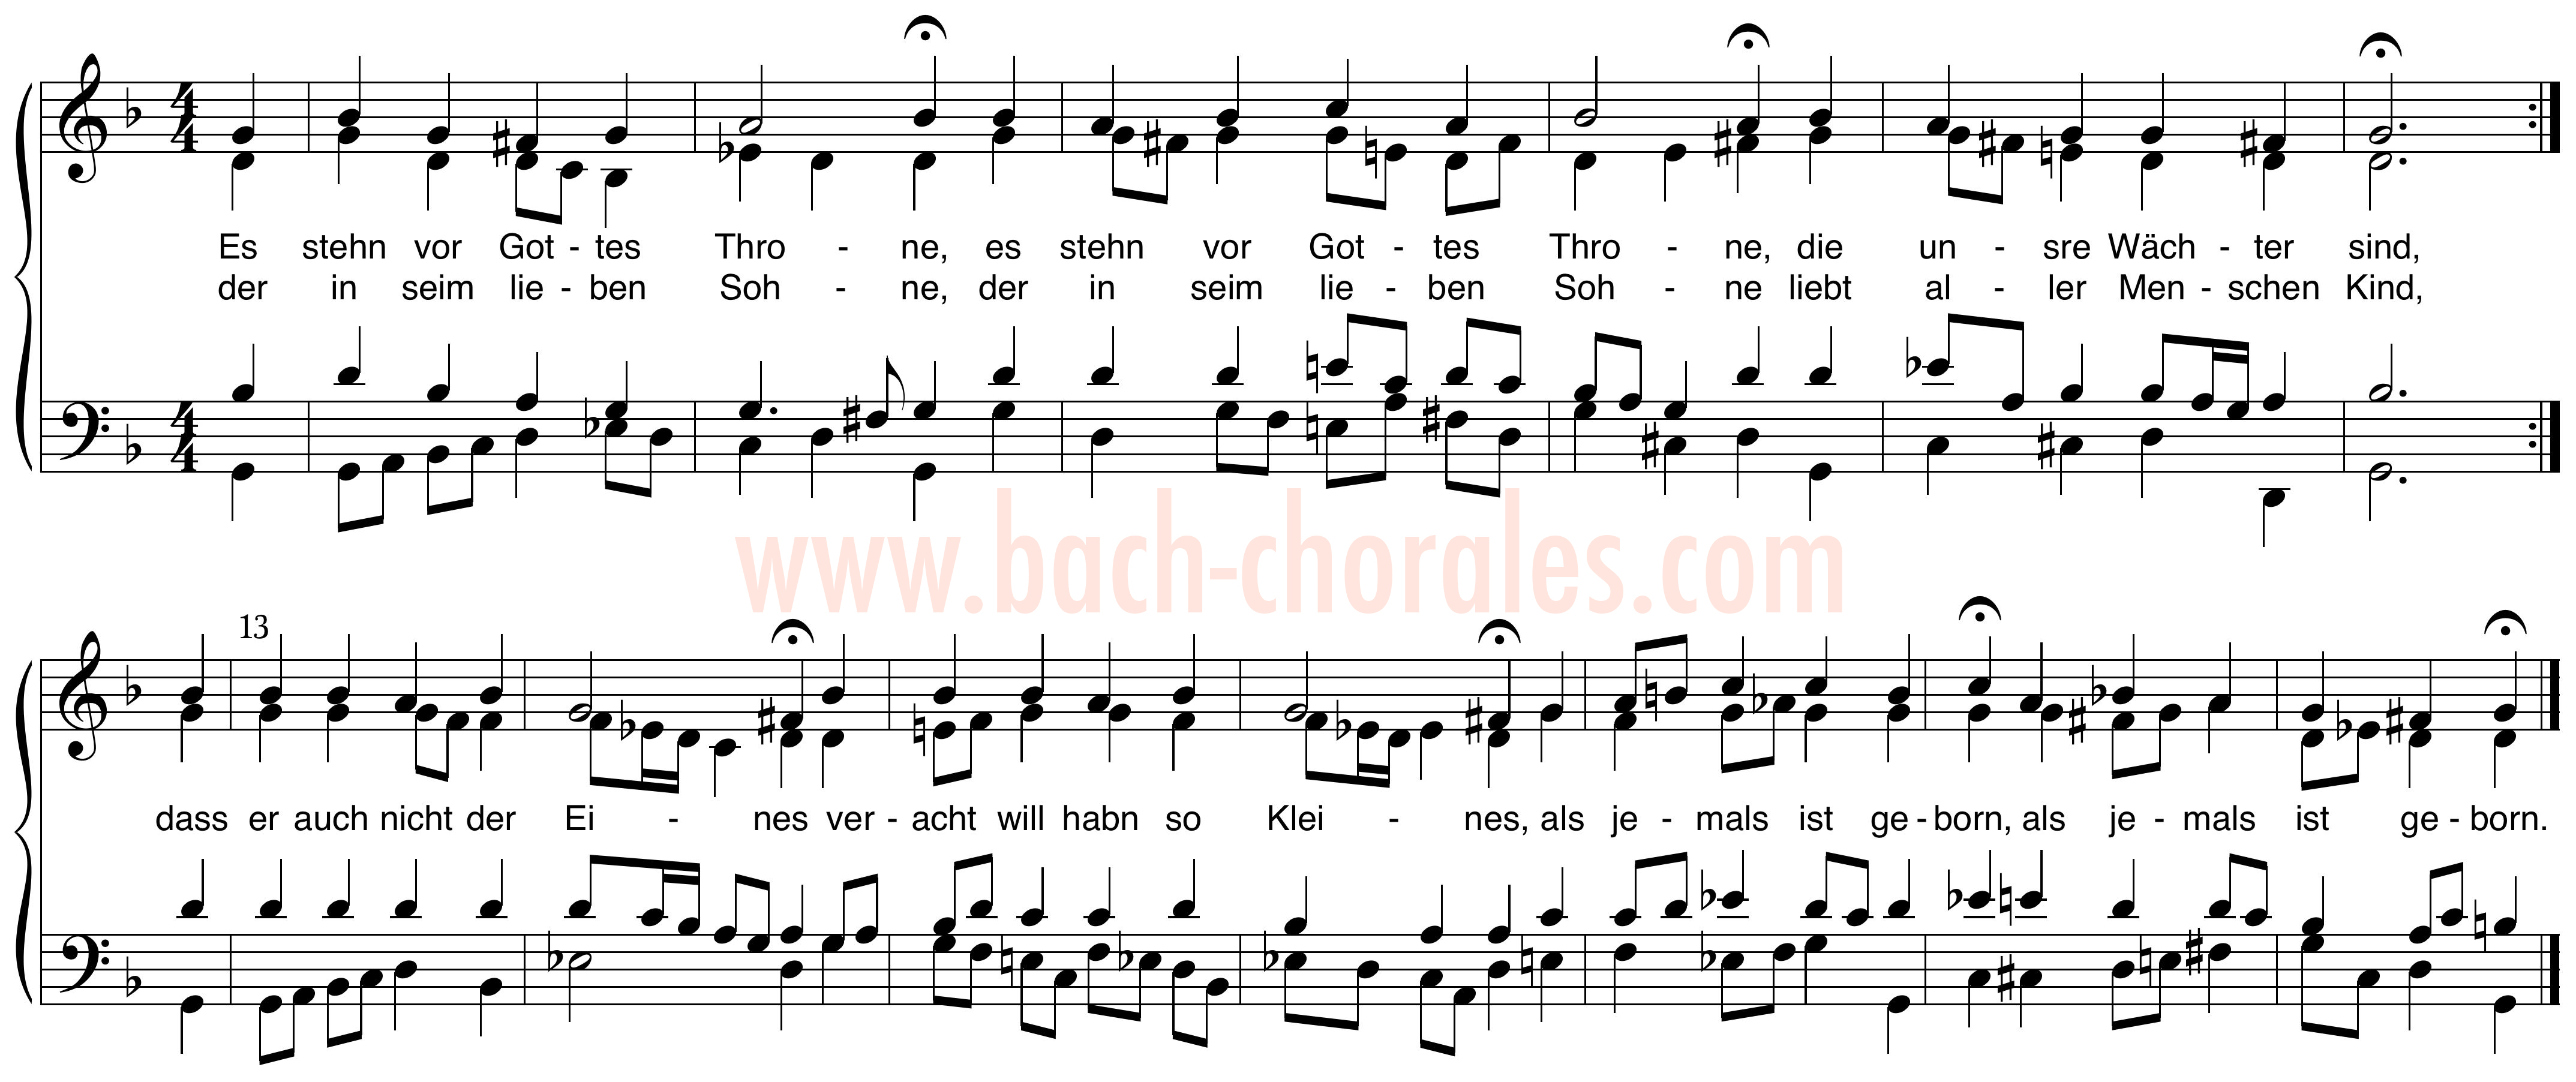 notenbeeld BWV 309 op https://www.bach-chorales.com/